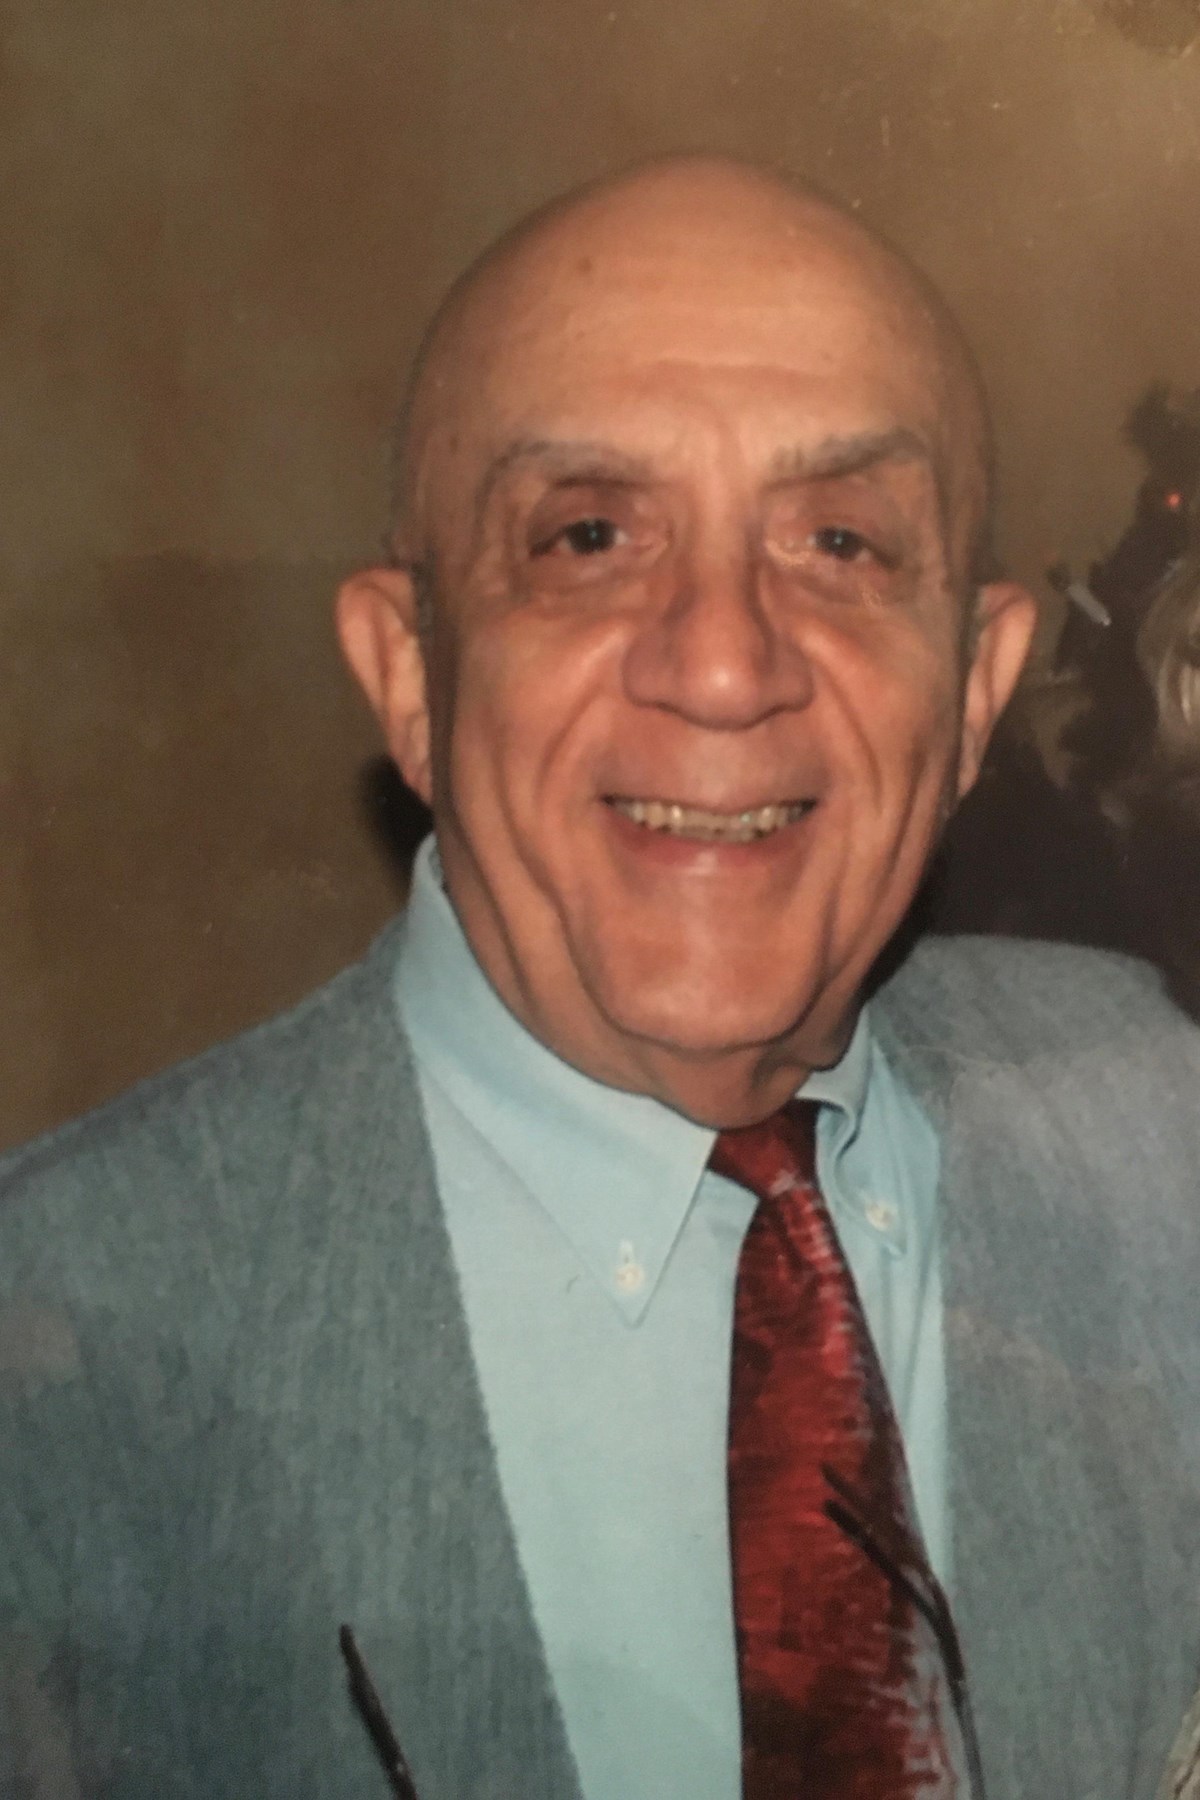 Dominic Polimeni Obituary - NJ